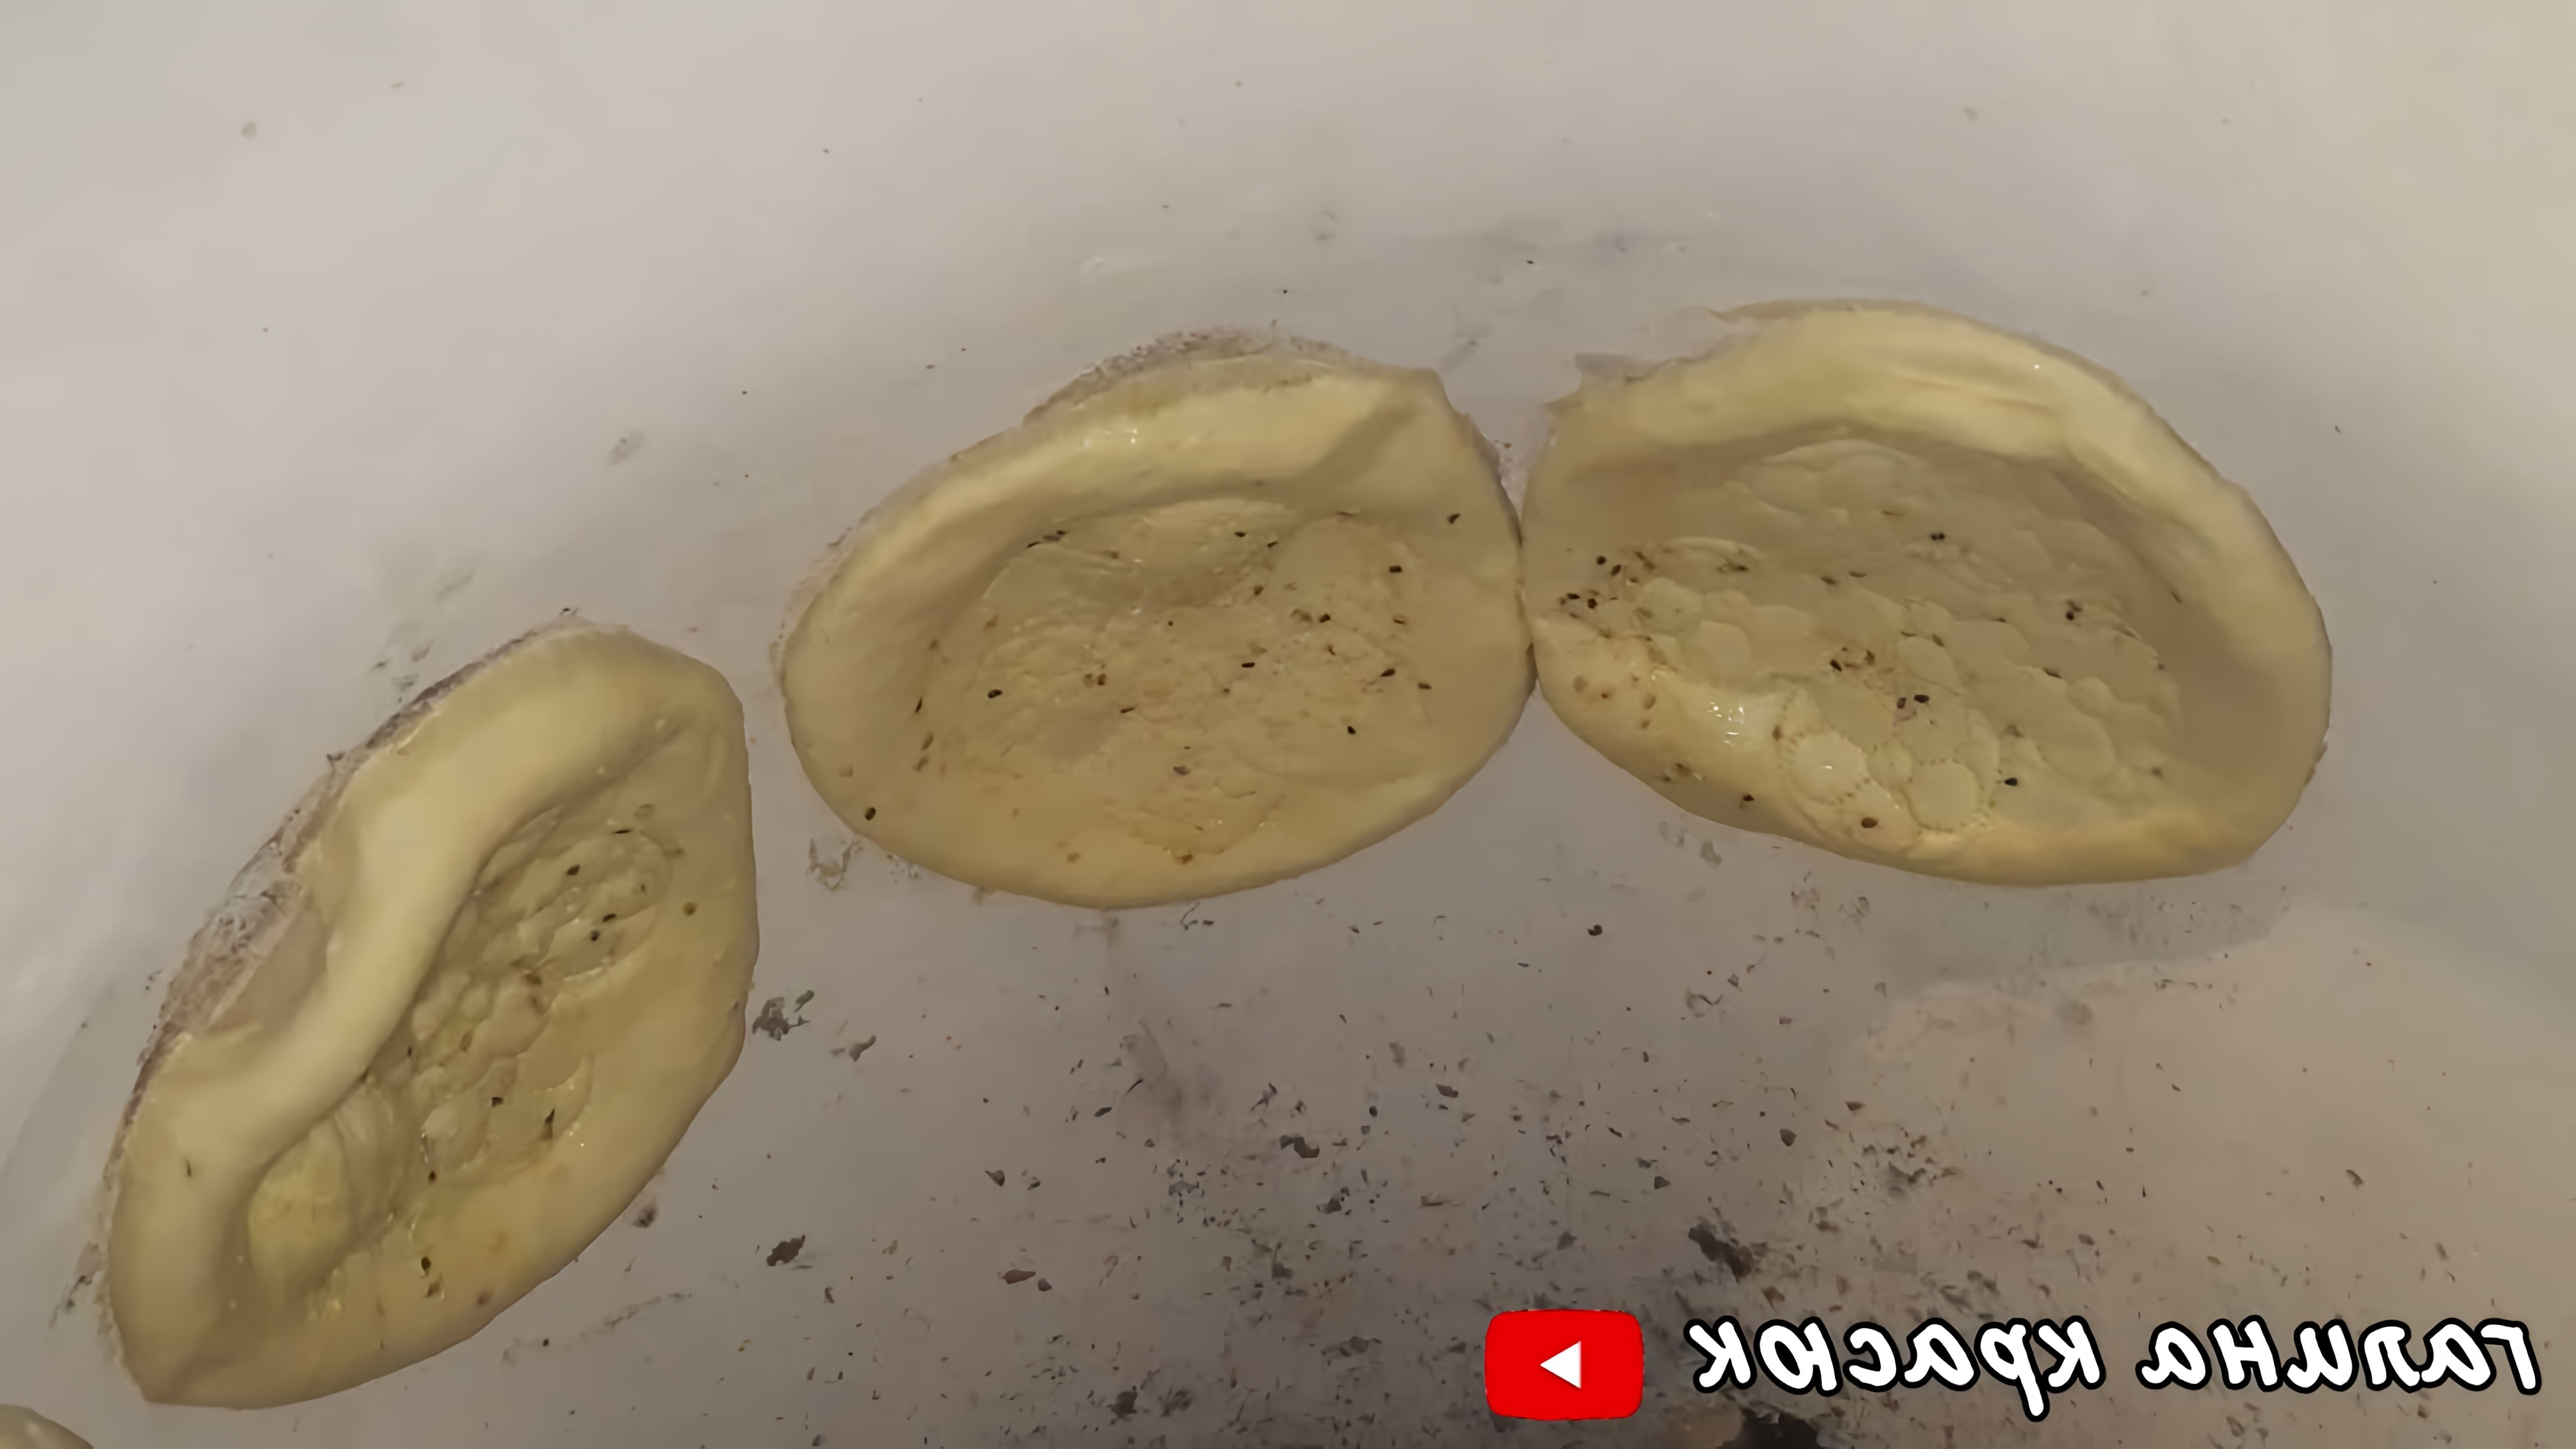 Сегодня сделали первый раз лепёшки узбекские в тандыре. #узбекскиелепёшкивтандыре#рецепты#еда#